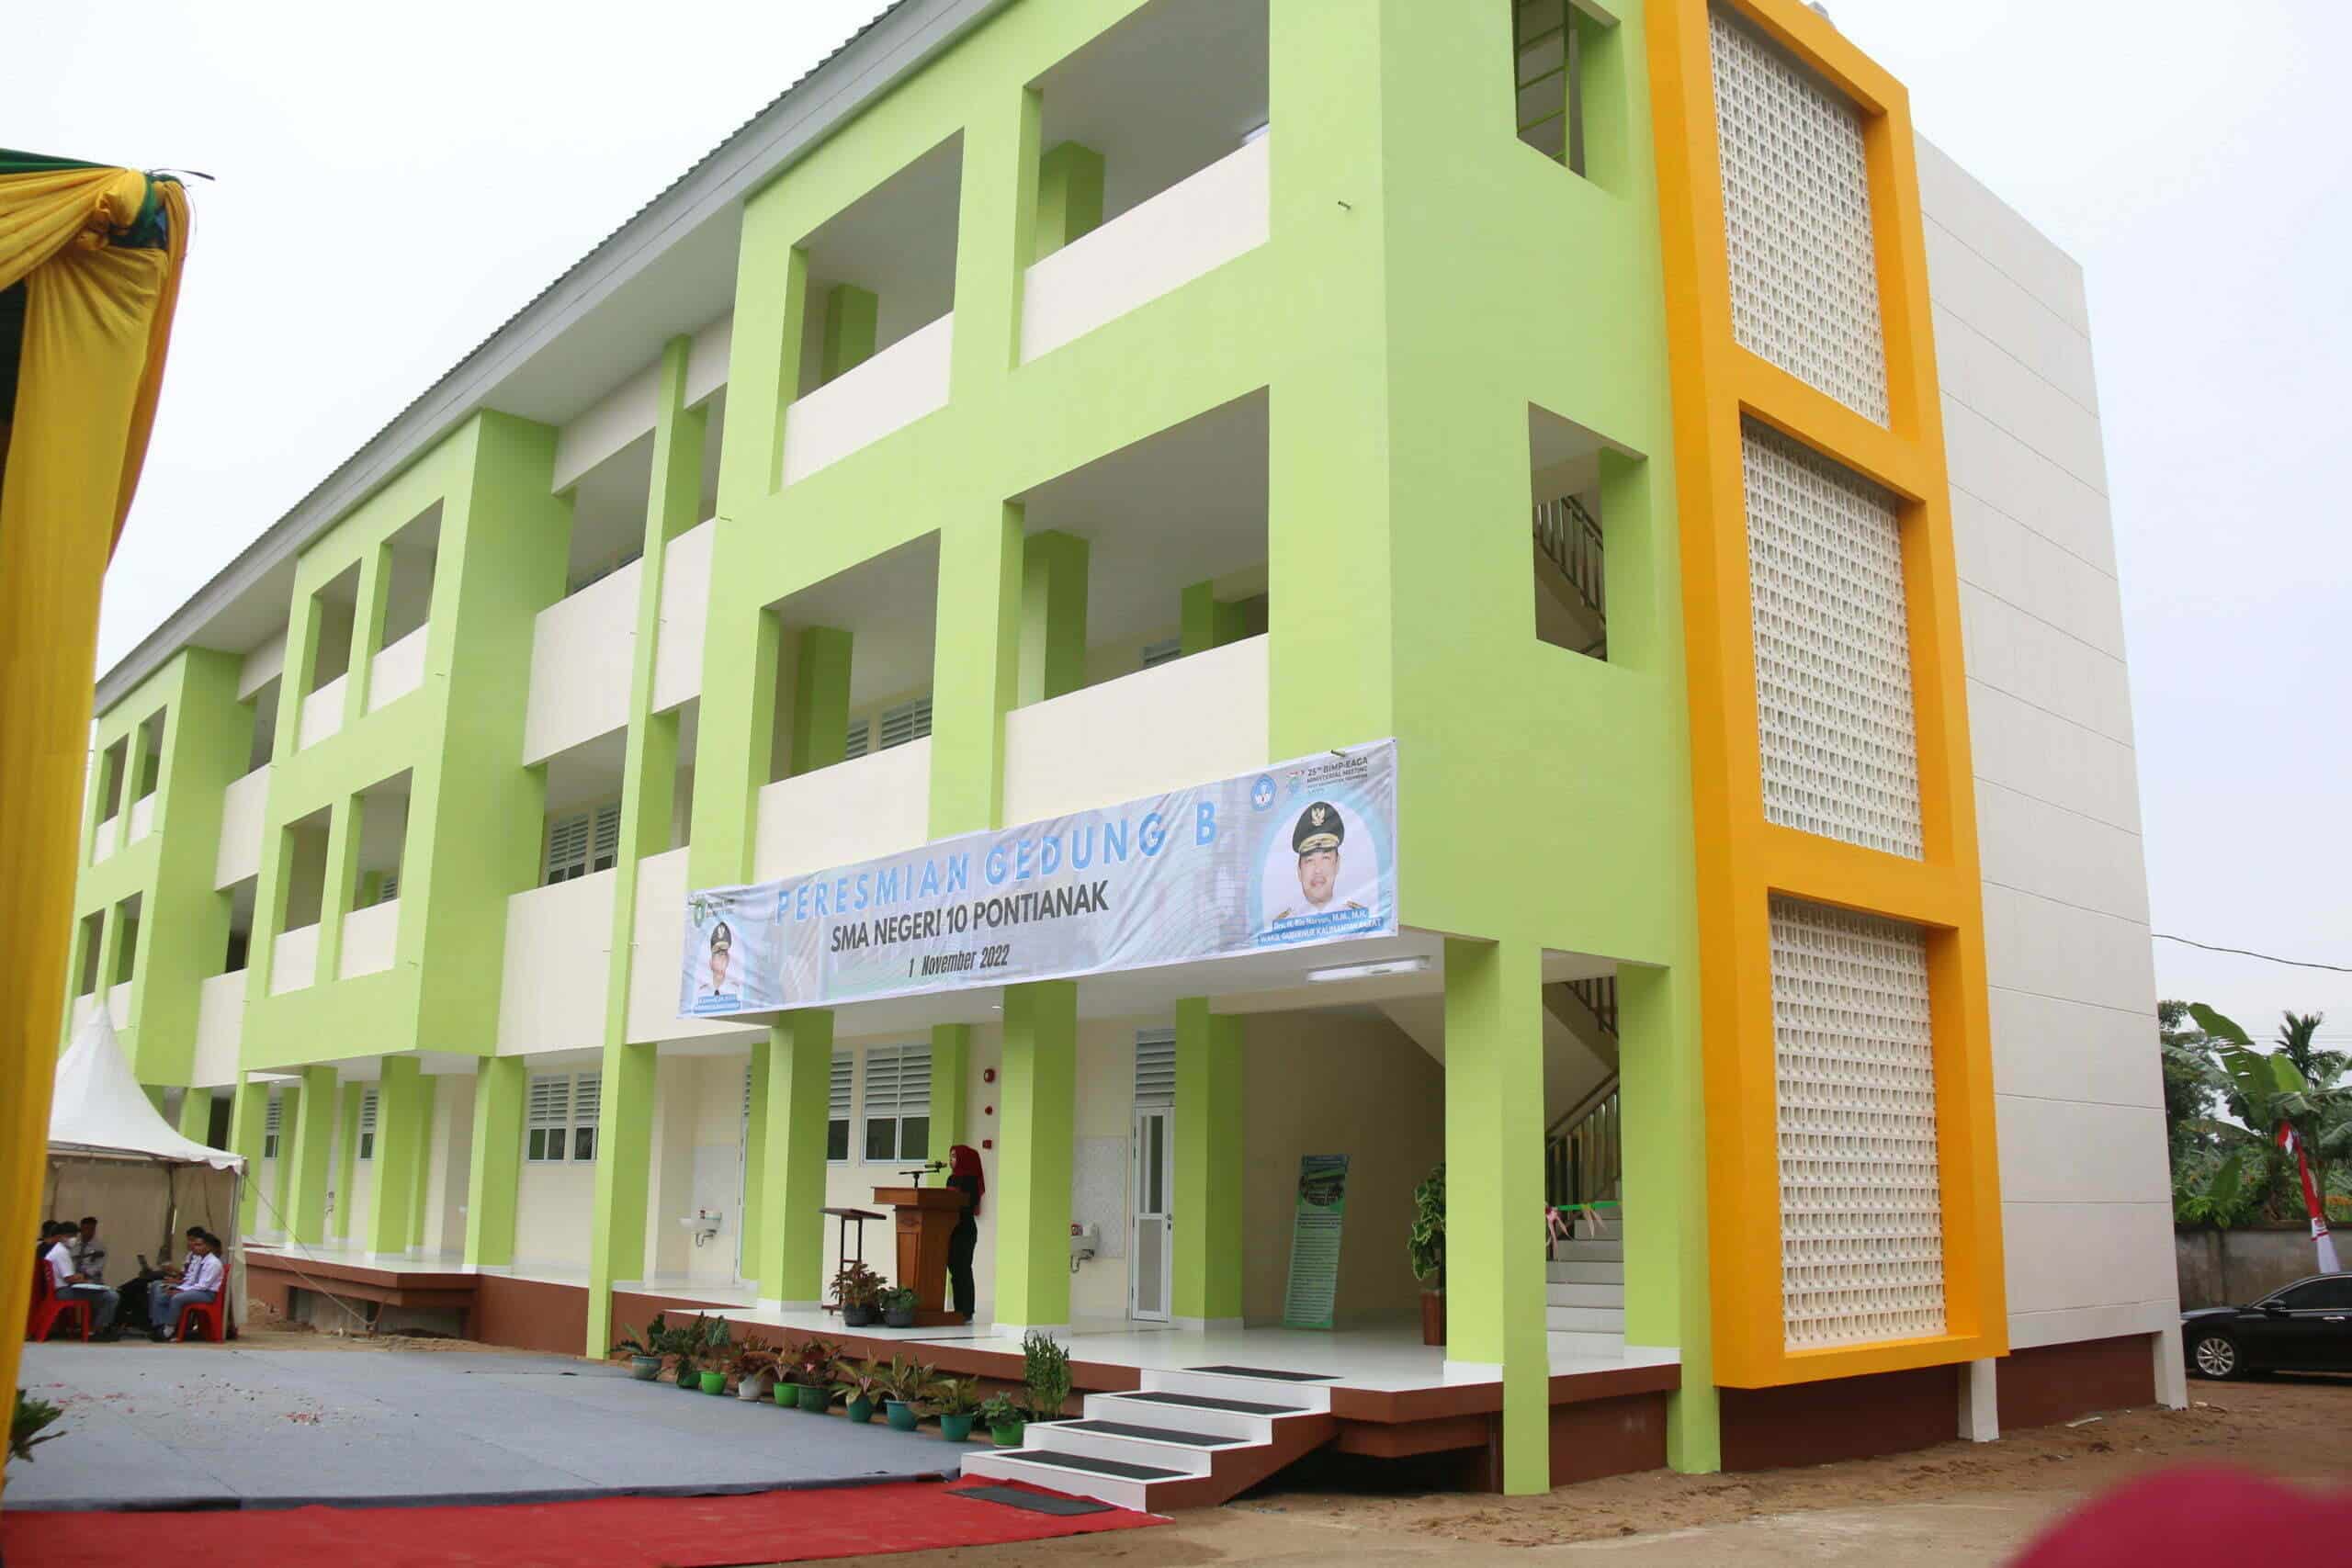 Penampakan gedung baru SMA Negeri 10 Pontianak. (Foto: Biro Adpim For KalbarOnline.com)